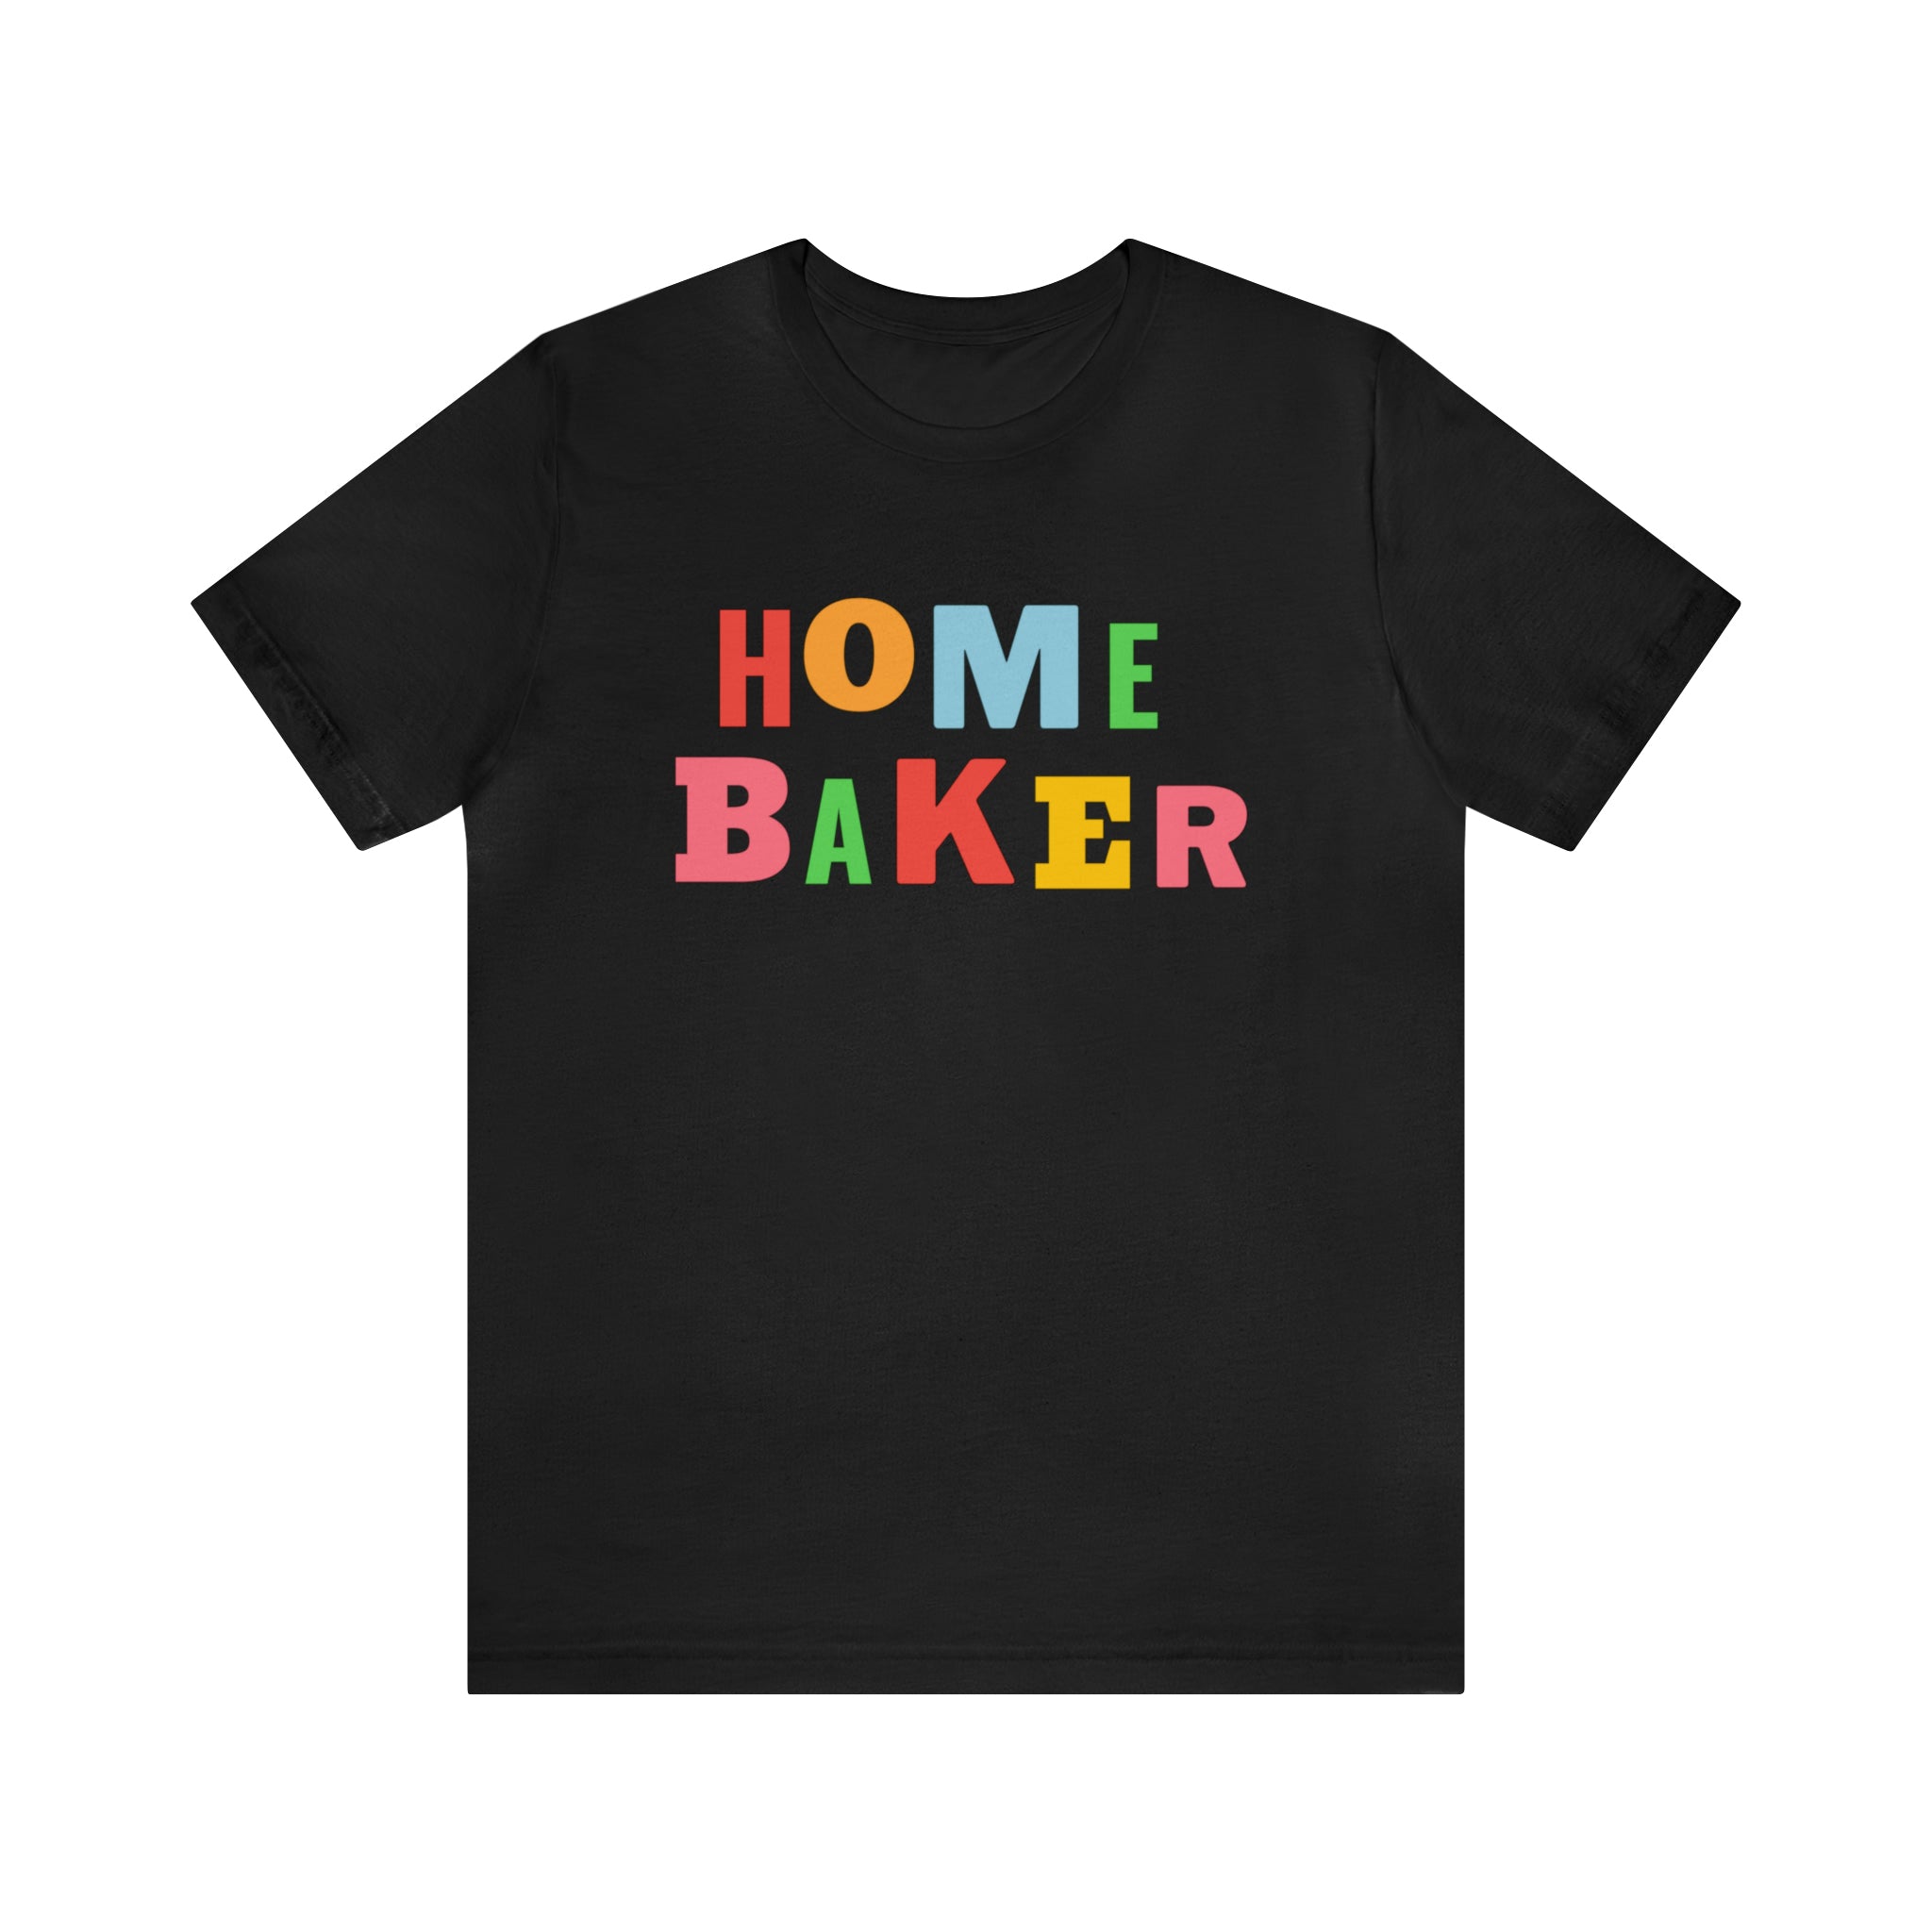 Home Baker